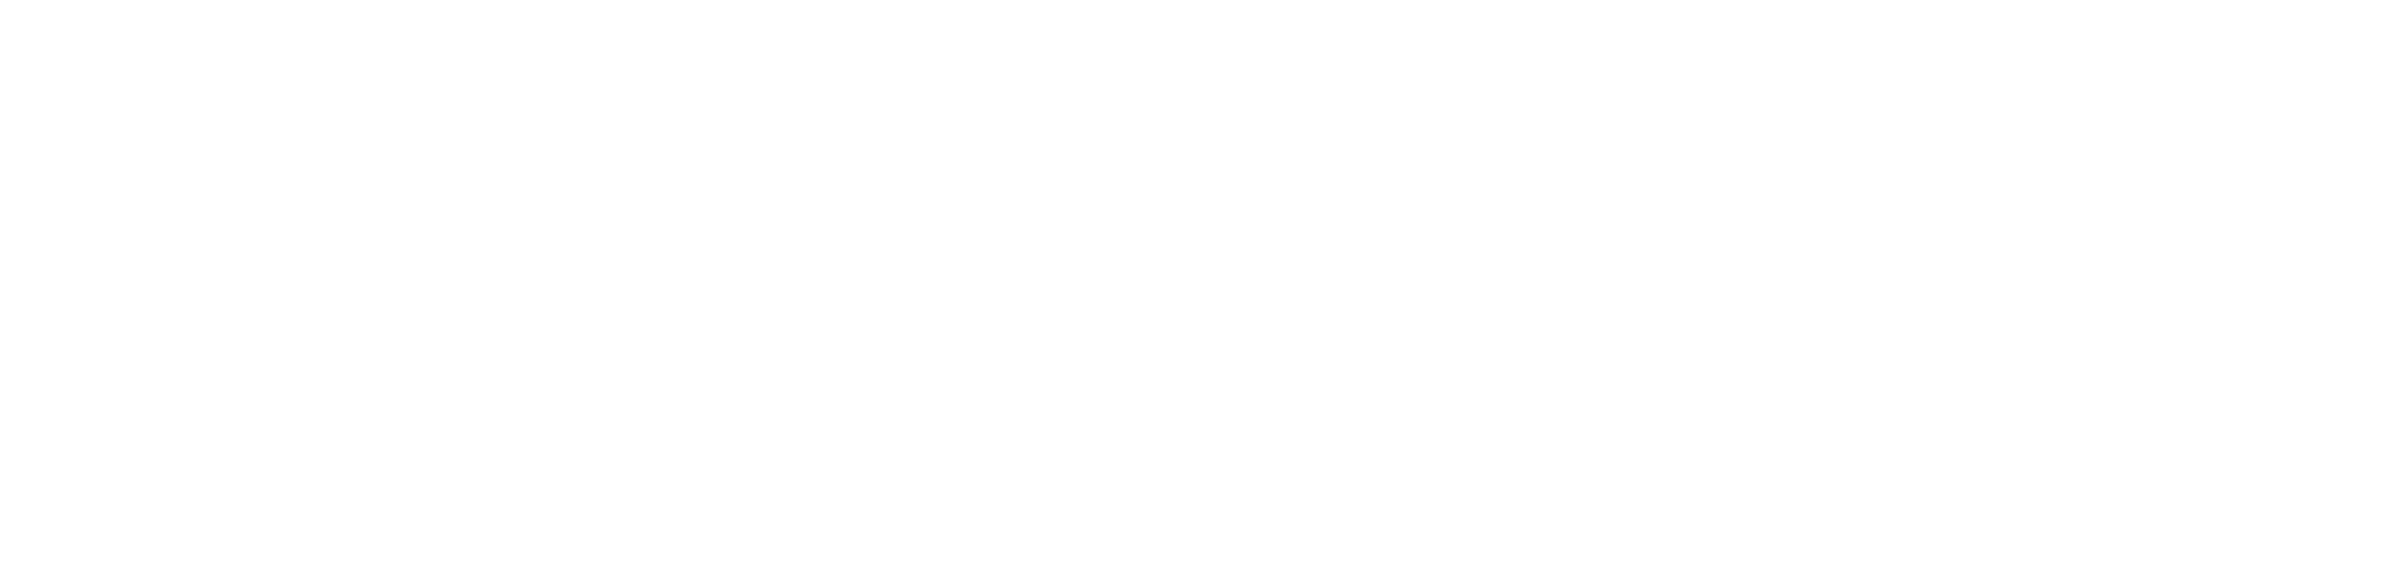 INFINITE-NETWORK